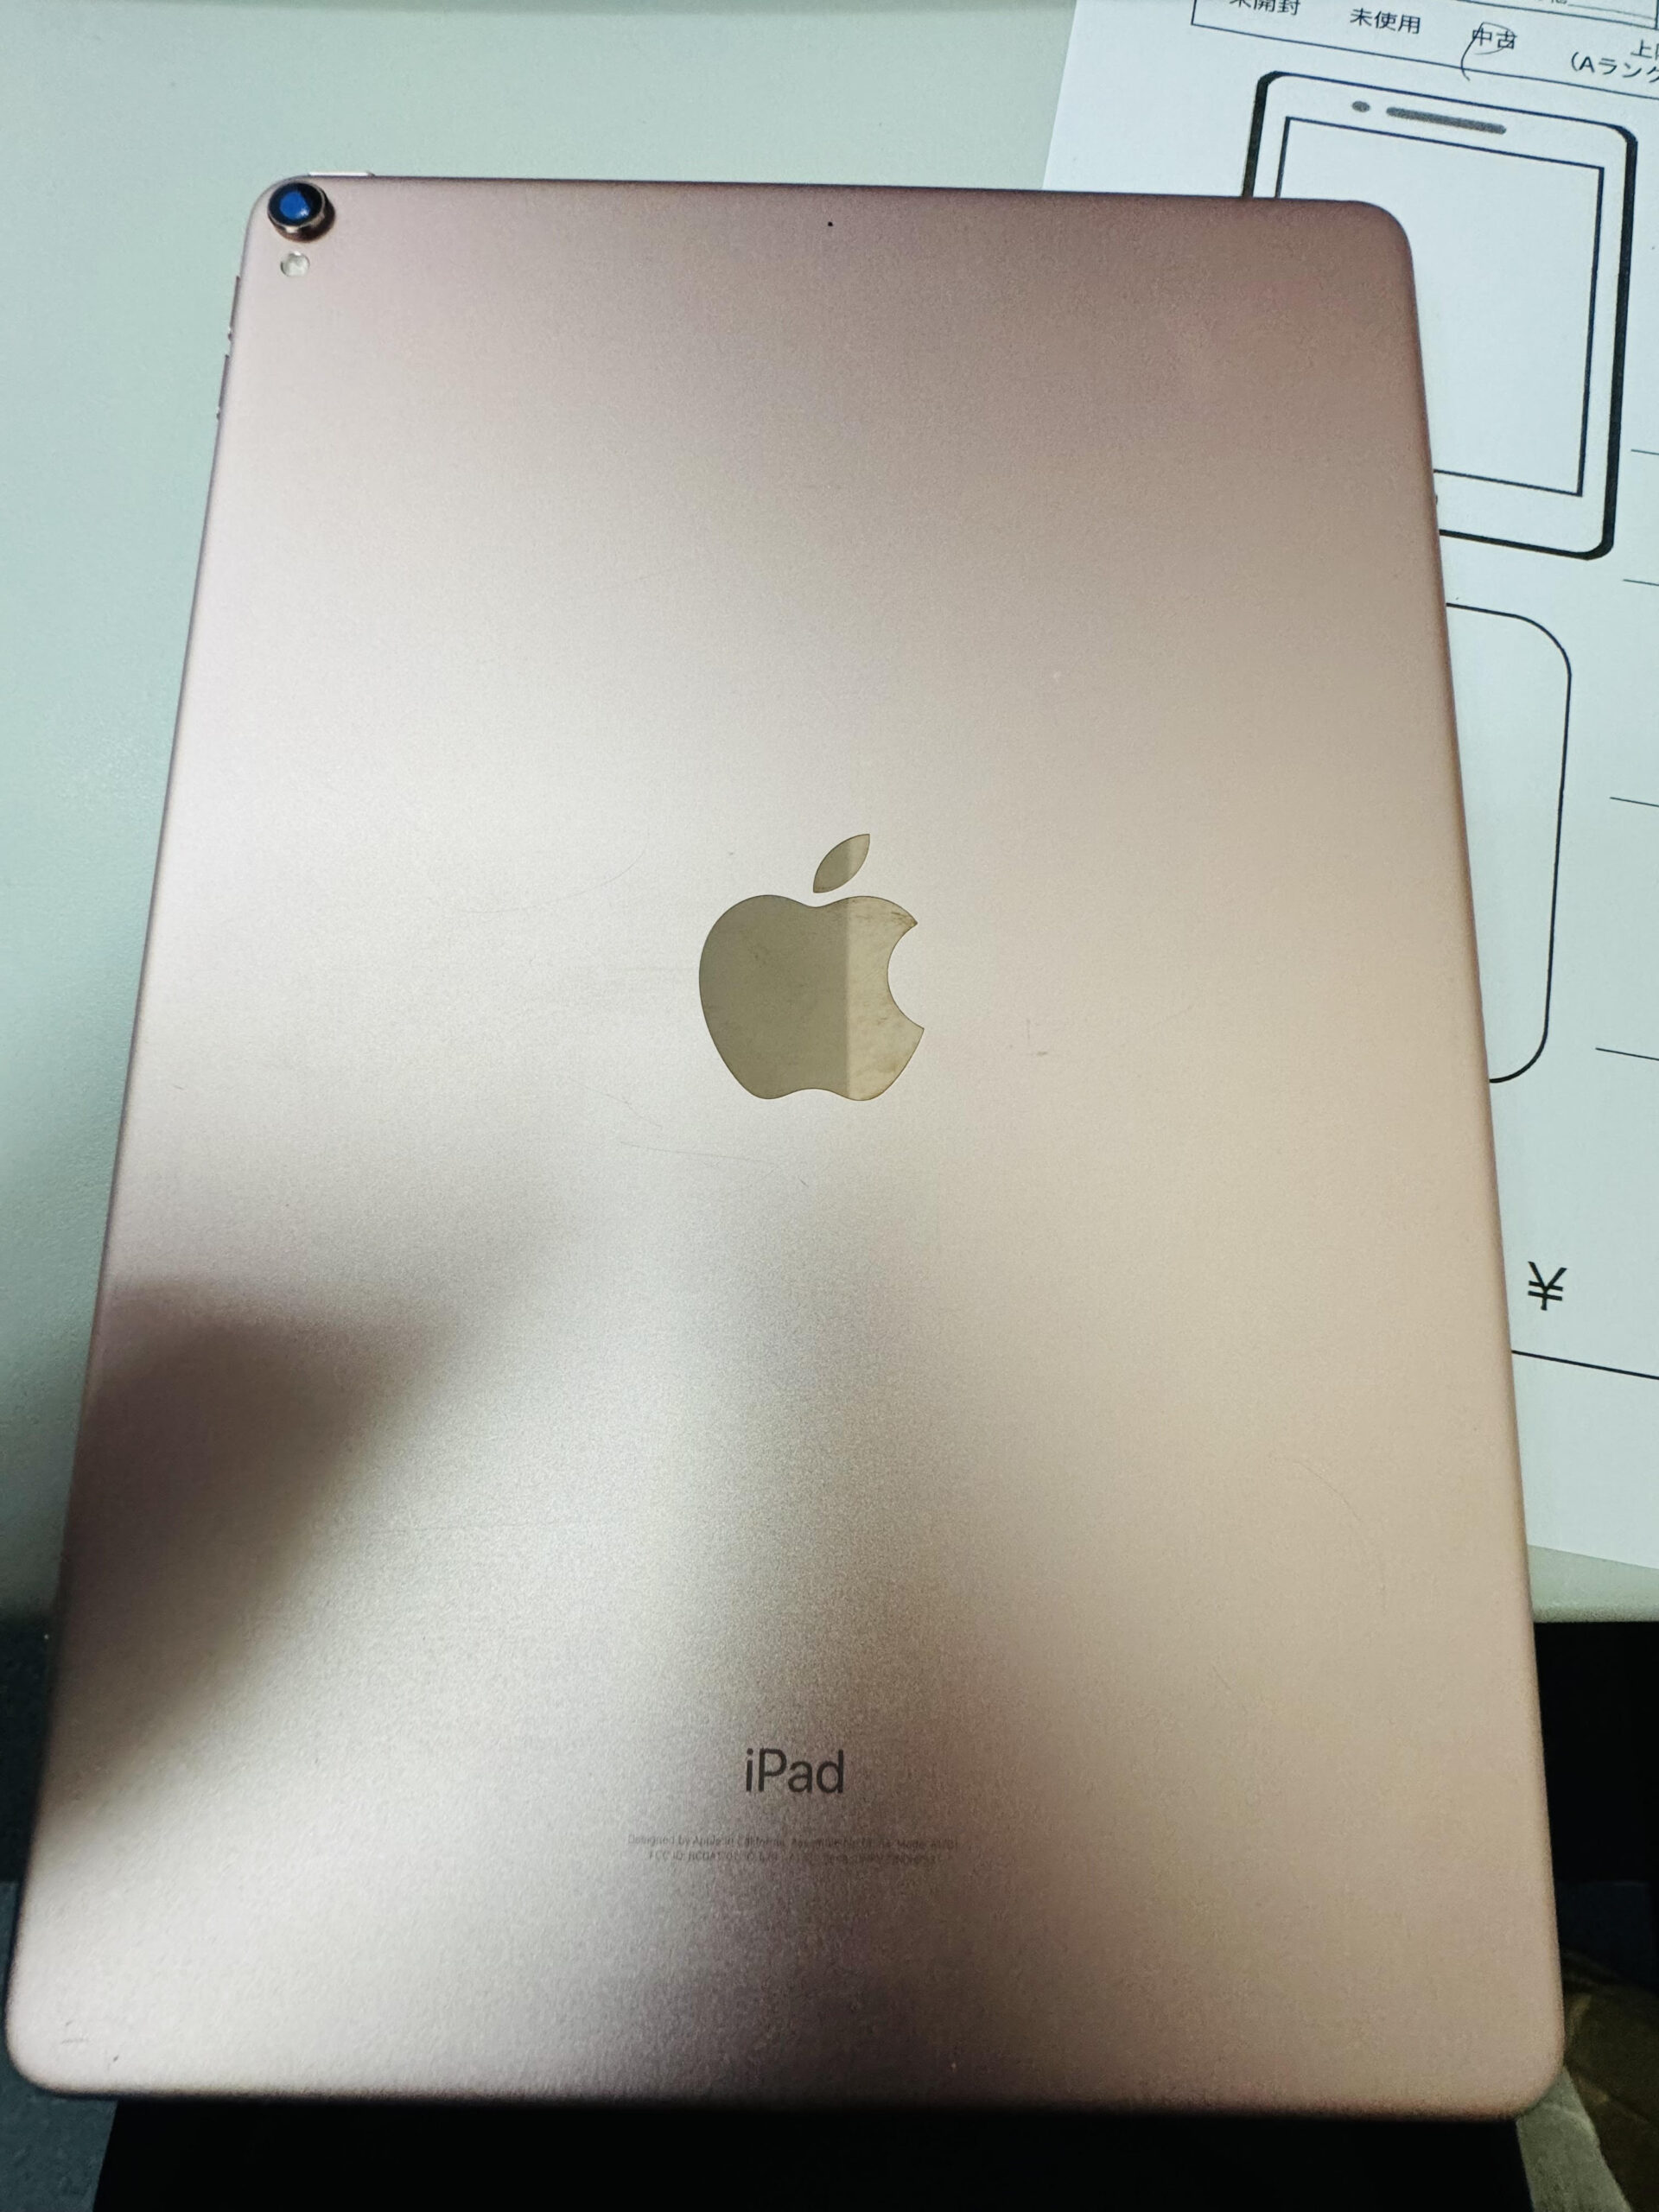 iPad Pro 10.5inch Wifiモデル pinkgold Apple 中古品 【所沢店】